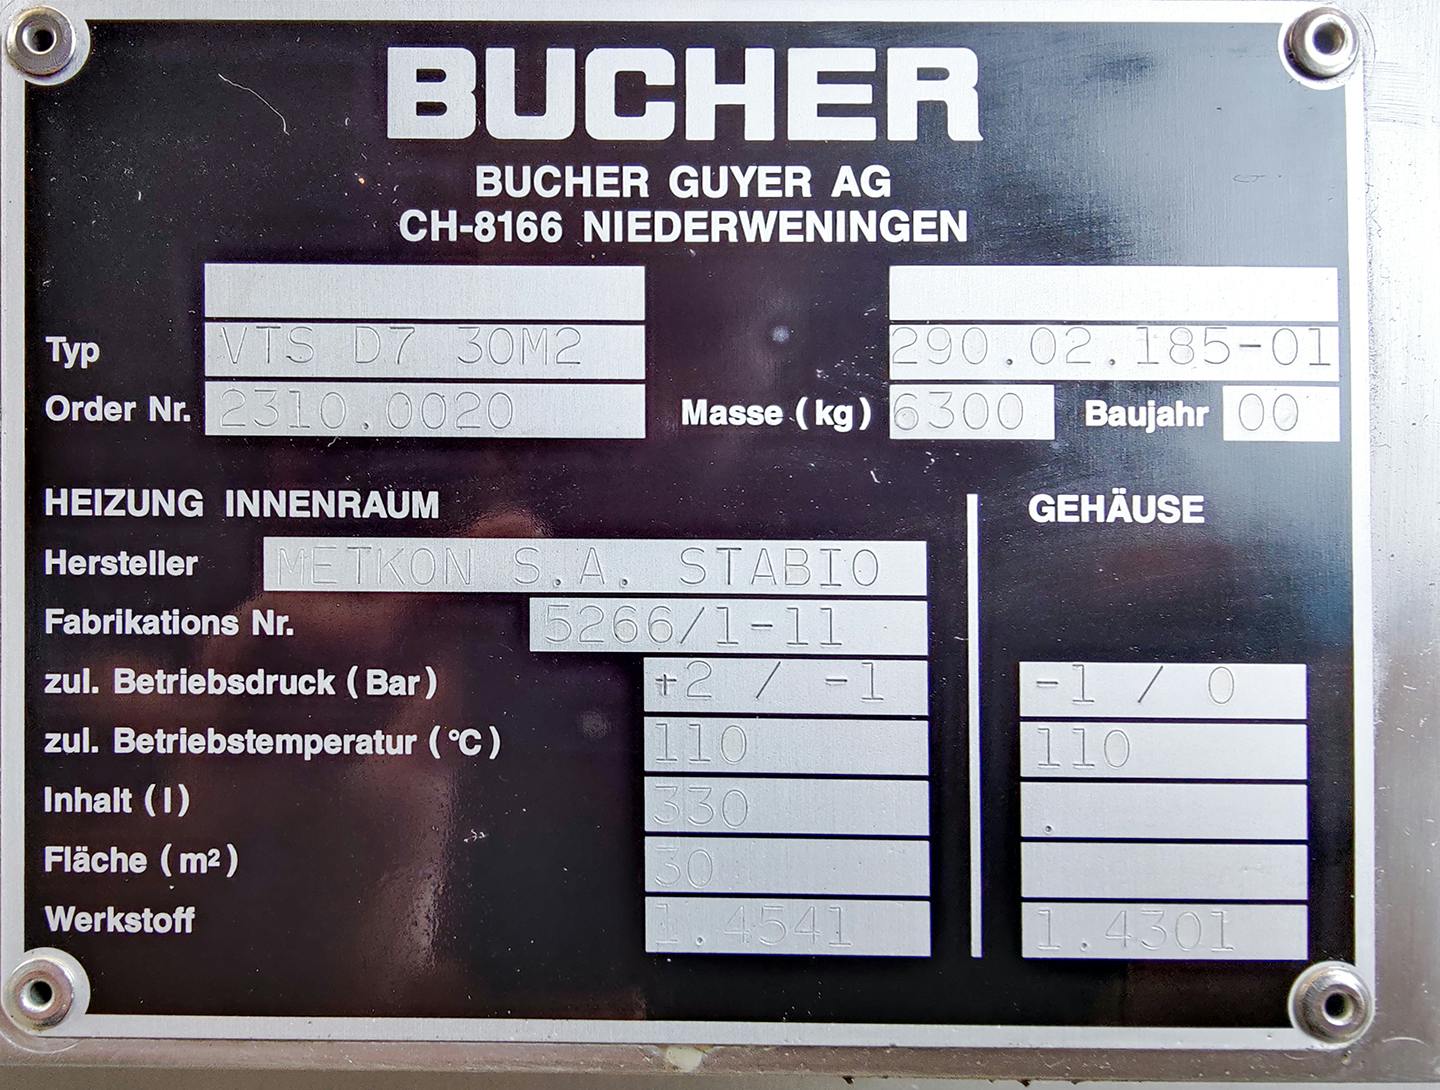 Bucher VTS-D7 30m2 - Tácová sušicka - image 8